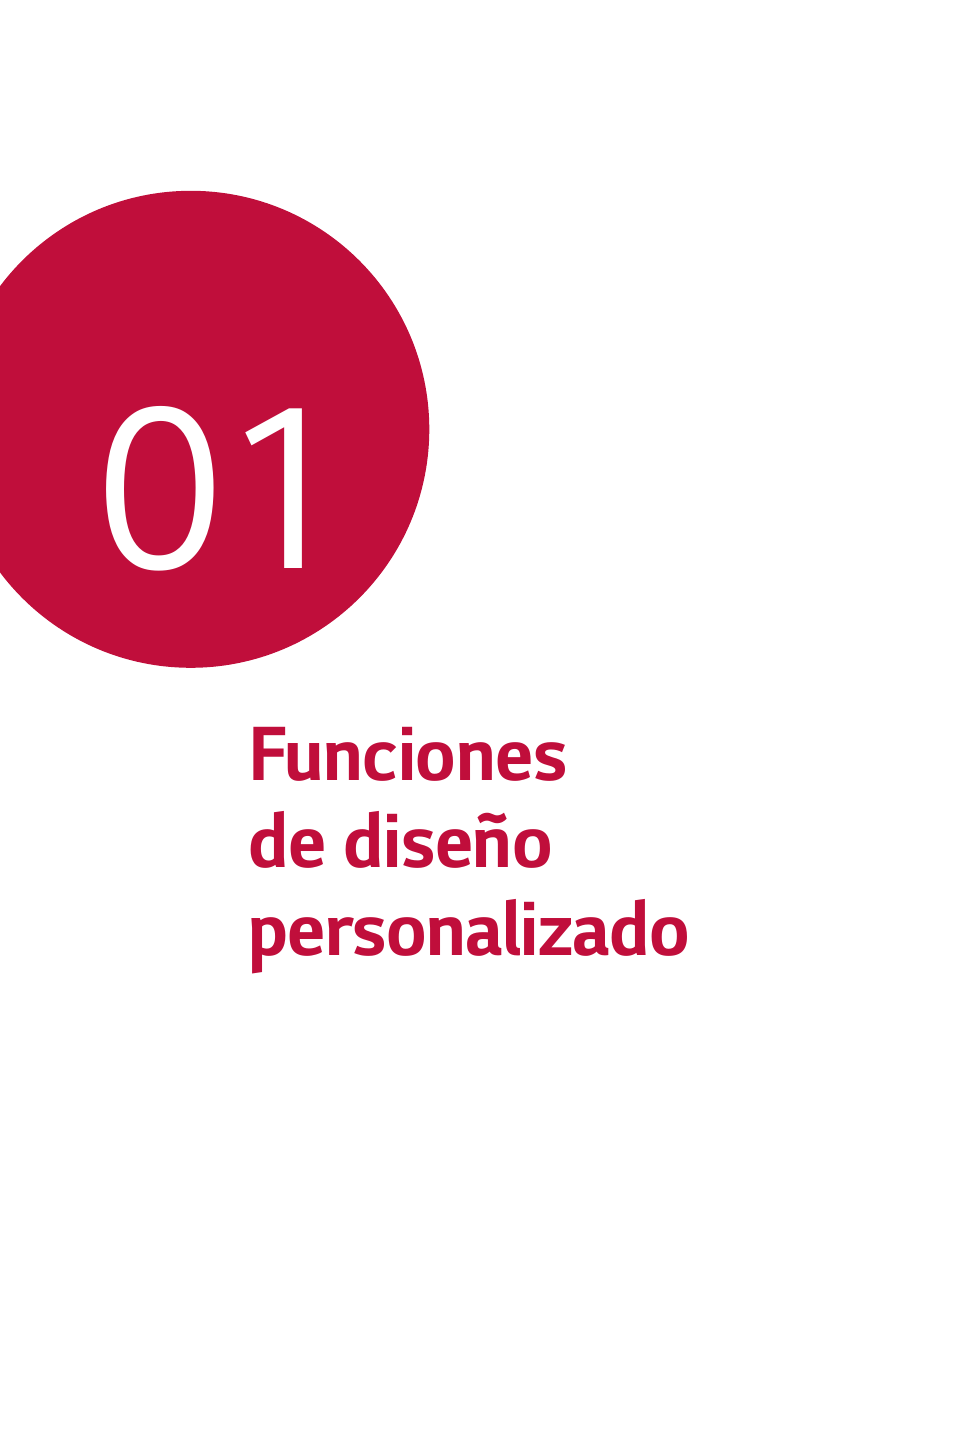 Funciones de diseño personalizado, Funciones de diseño, Personalizado | LG G6 H872 Manual del usuario | Página 6 / 185